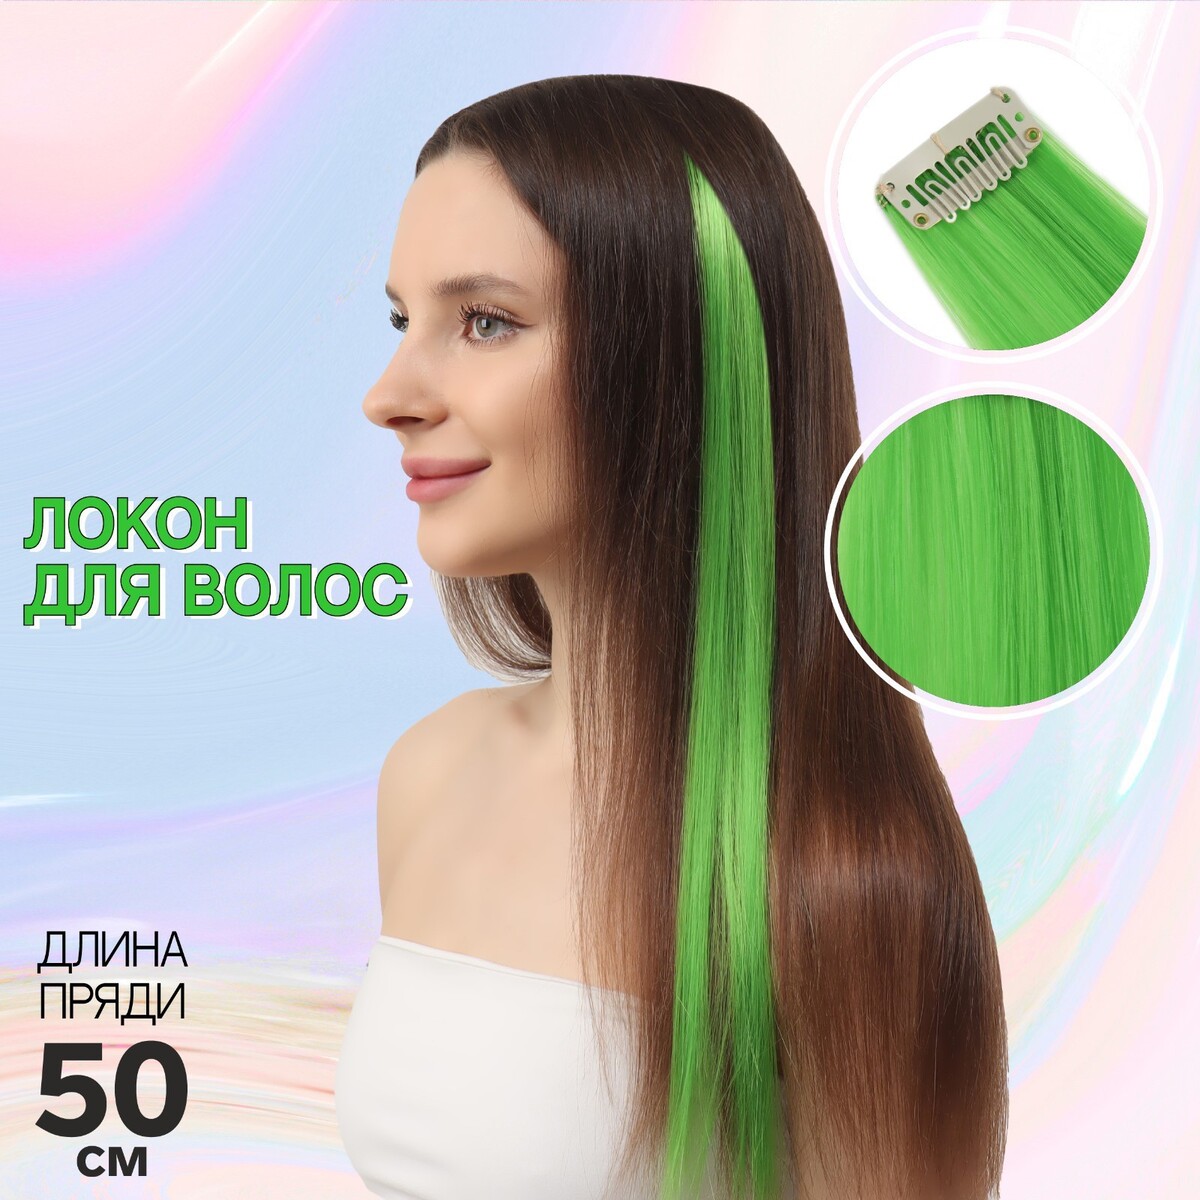 Локон накладной, прямой волос, на заколке, 50 см, 5 гр, цвет зеленый резинка для волос kari b4021 цв красный зеленый